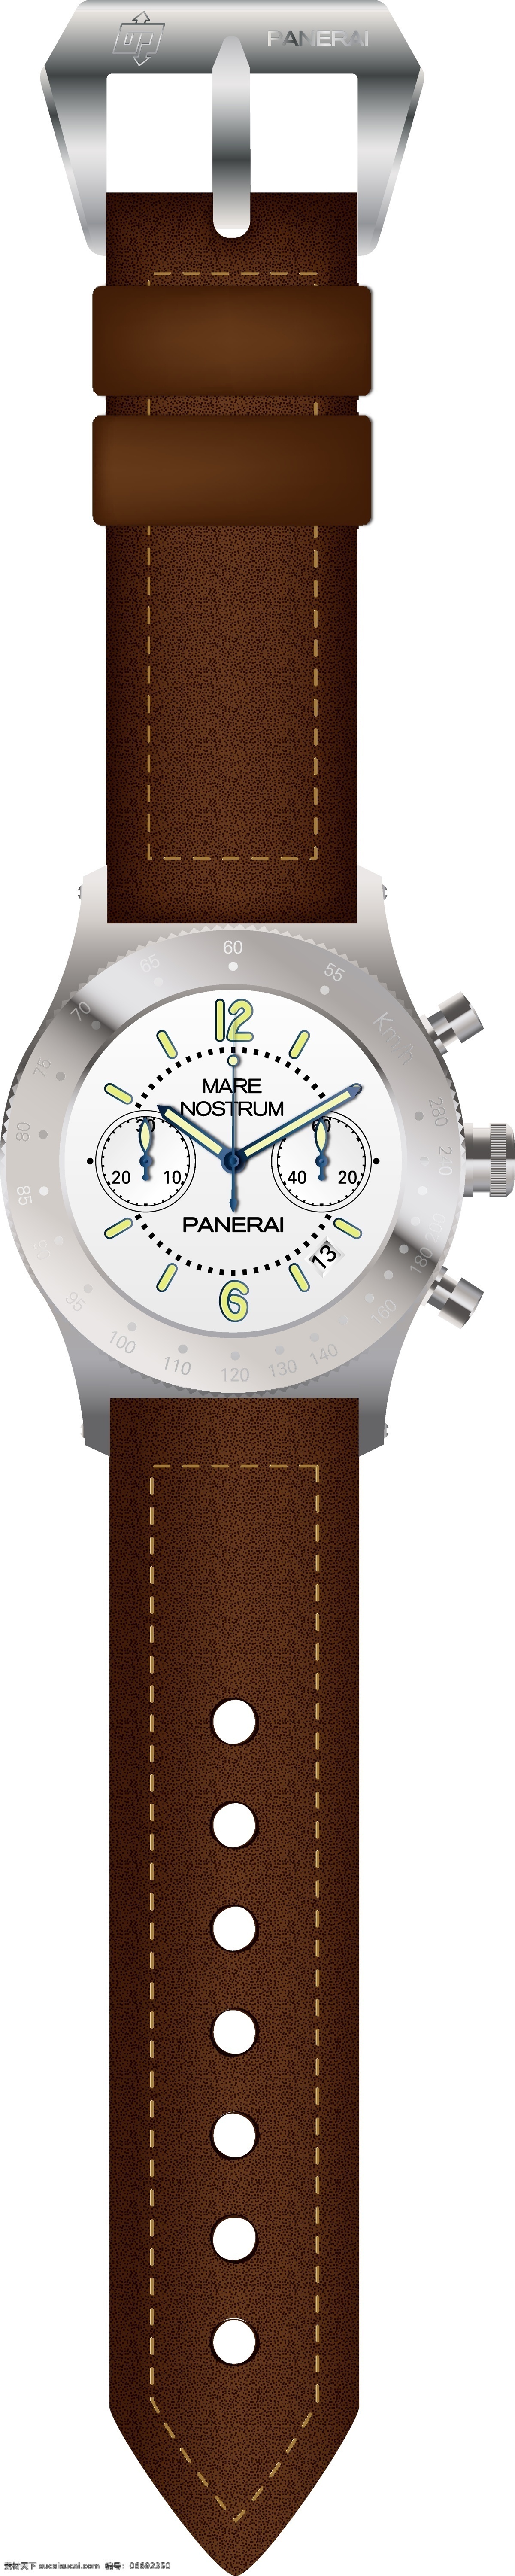 非常 漂亮 男士 手表 手表矢量素材 矢量手表 指针 表盘 表带 时间 男士手表 矢量图 eps格式 白色